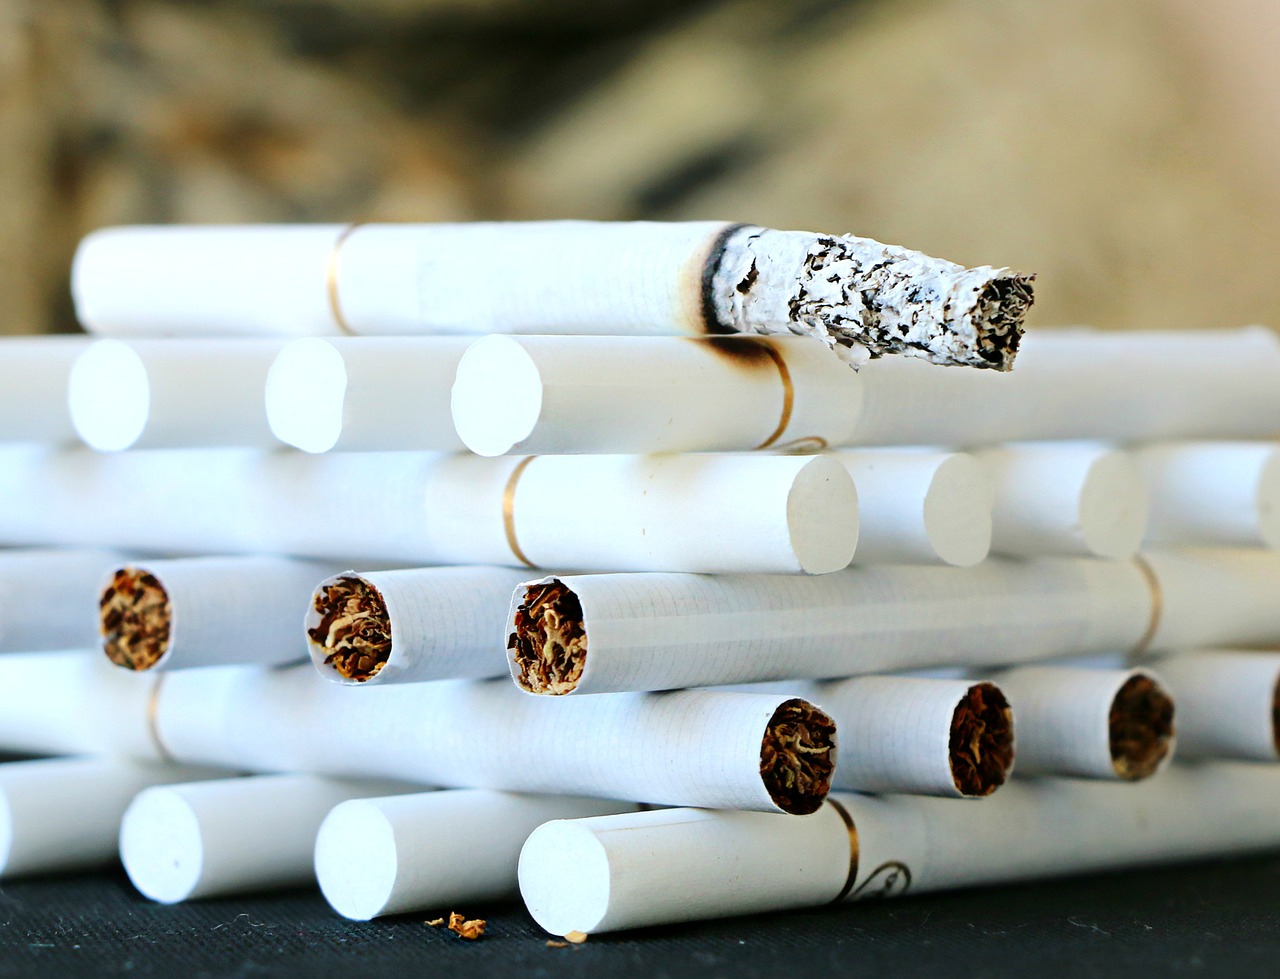 Sigarette addio? Entro 10 anni le “bionde” potrebbero sparire per